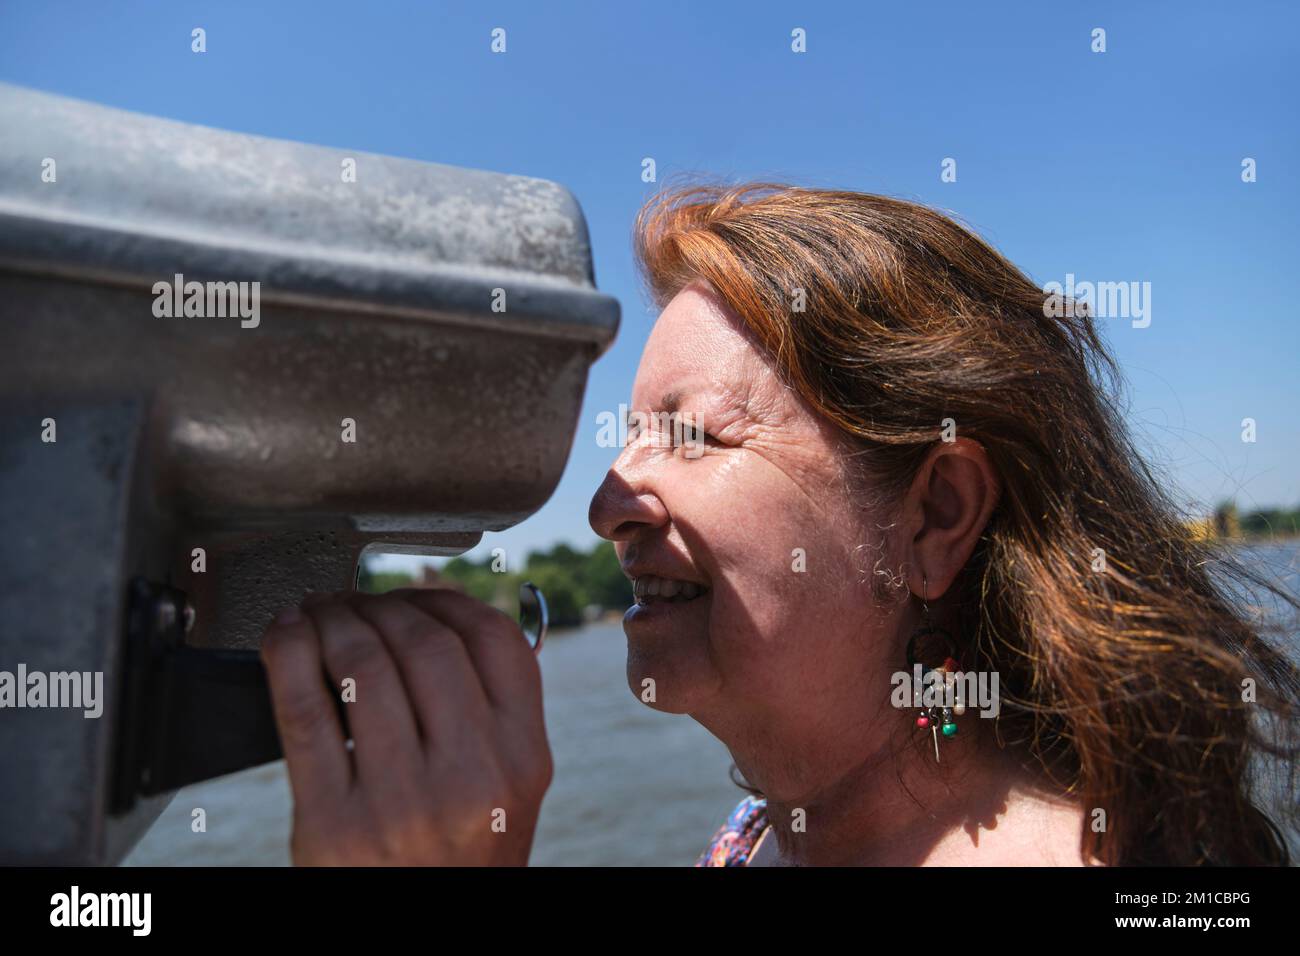 Ritratto di una donna matura ispanica che si diverte a guardare attraverso binocoli pubblici. Concetti di curiosità, osservazione, esplorazione, ricerca, viaggio. Foto Stock